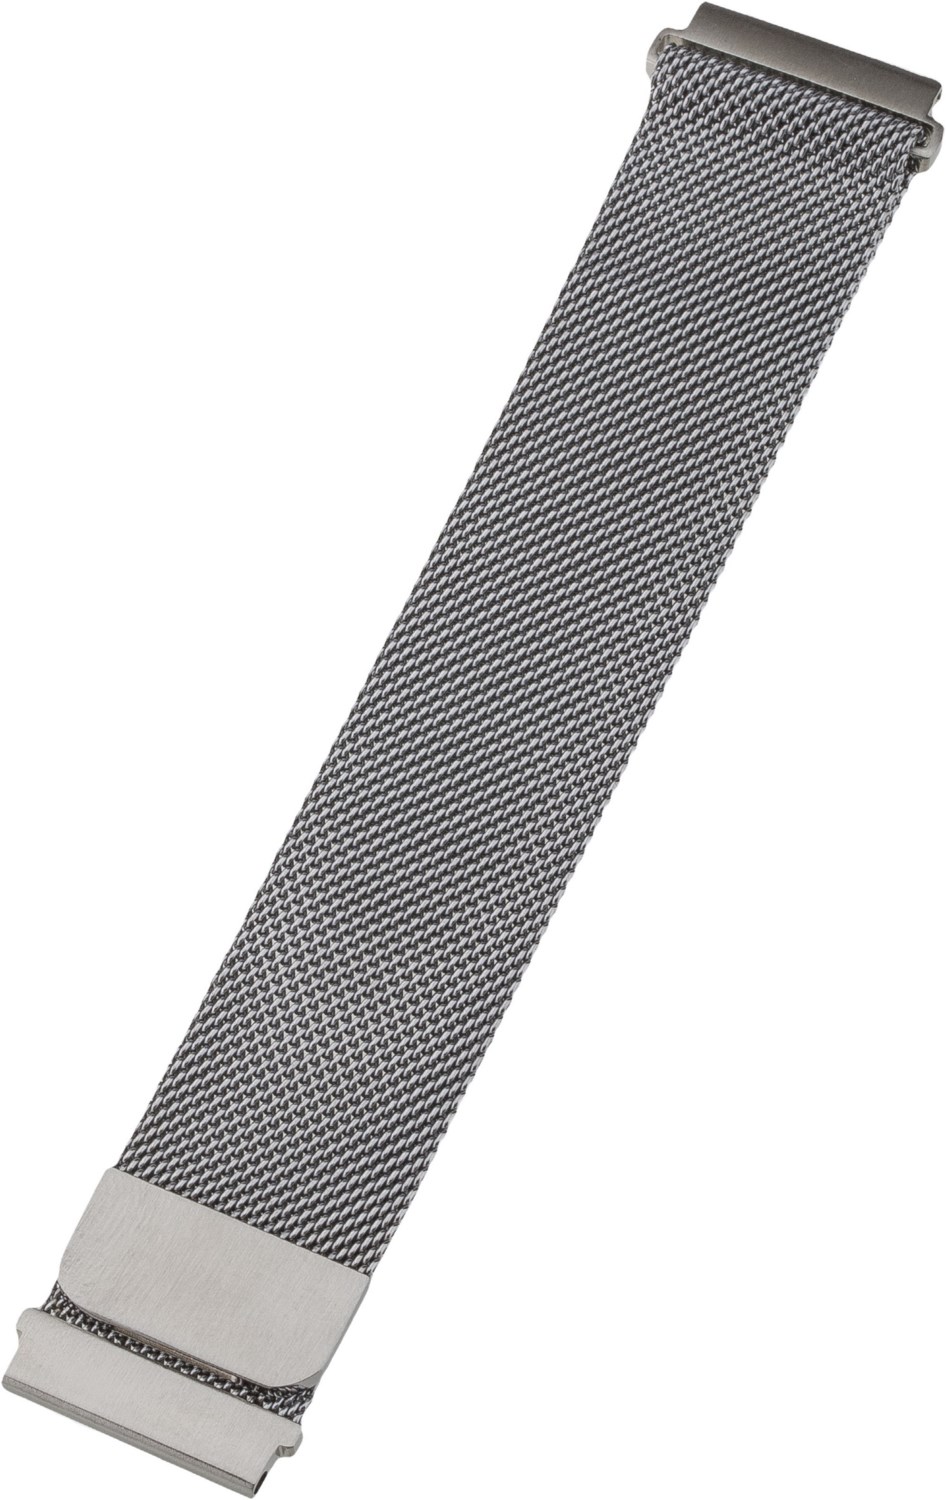 Armband Milanaise (22mm) silber von Peter Jäckel